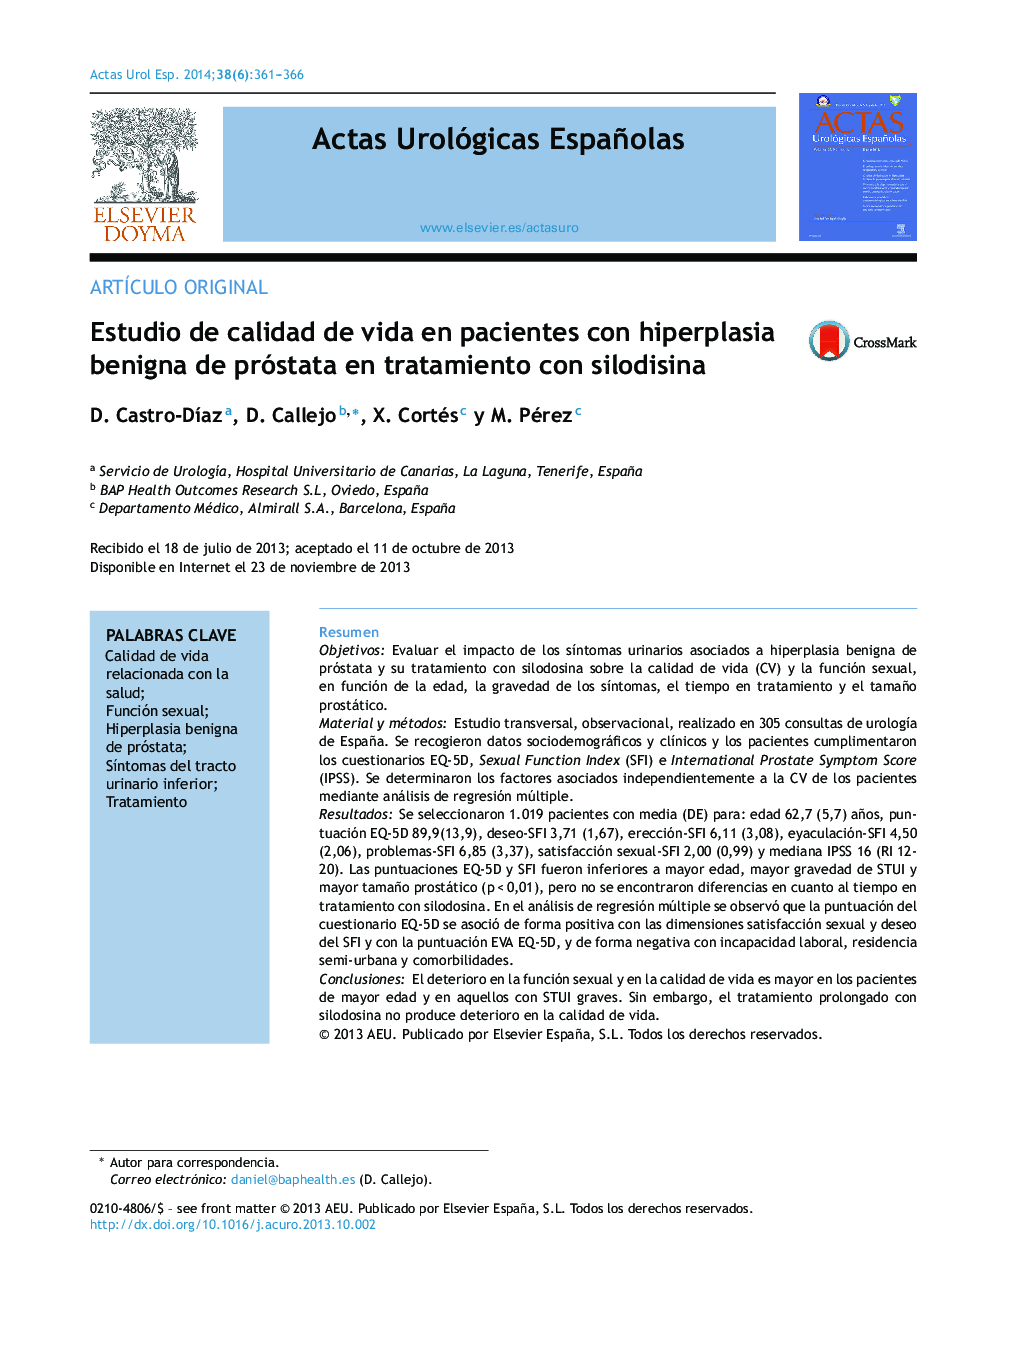 Estudio de calidad de vida en pacientes con hiperplasia benigna de próstata en tratamiento con silodisina